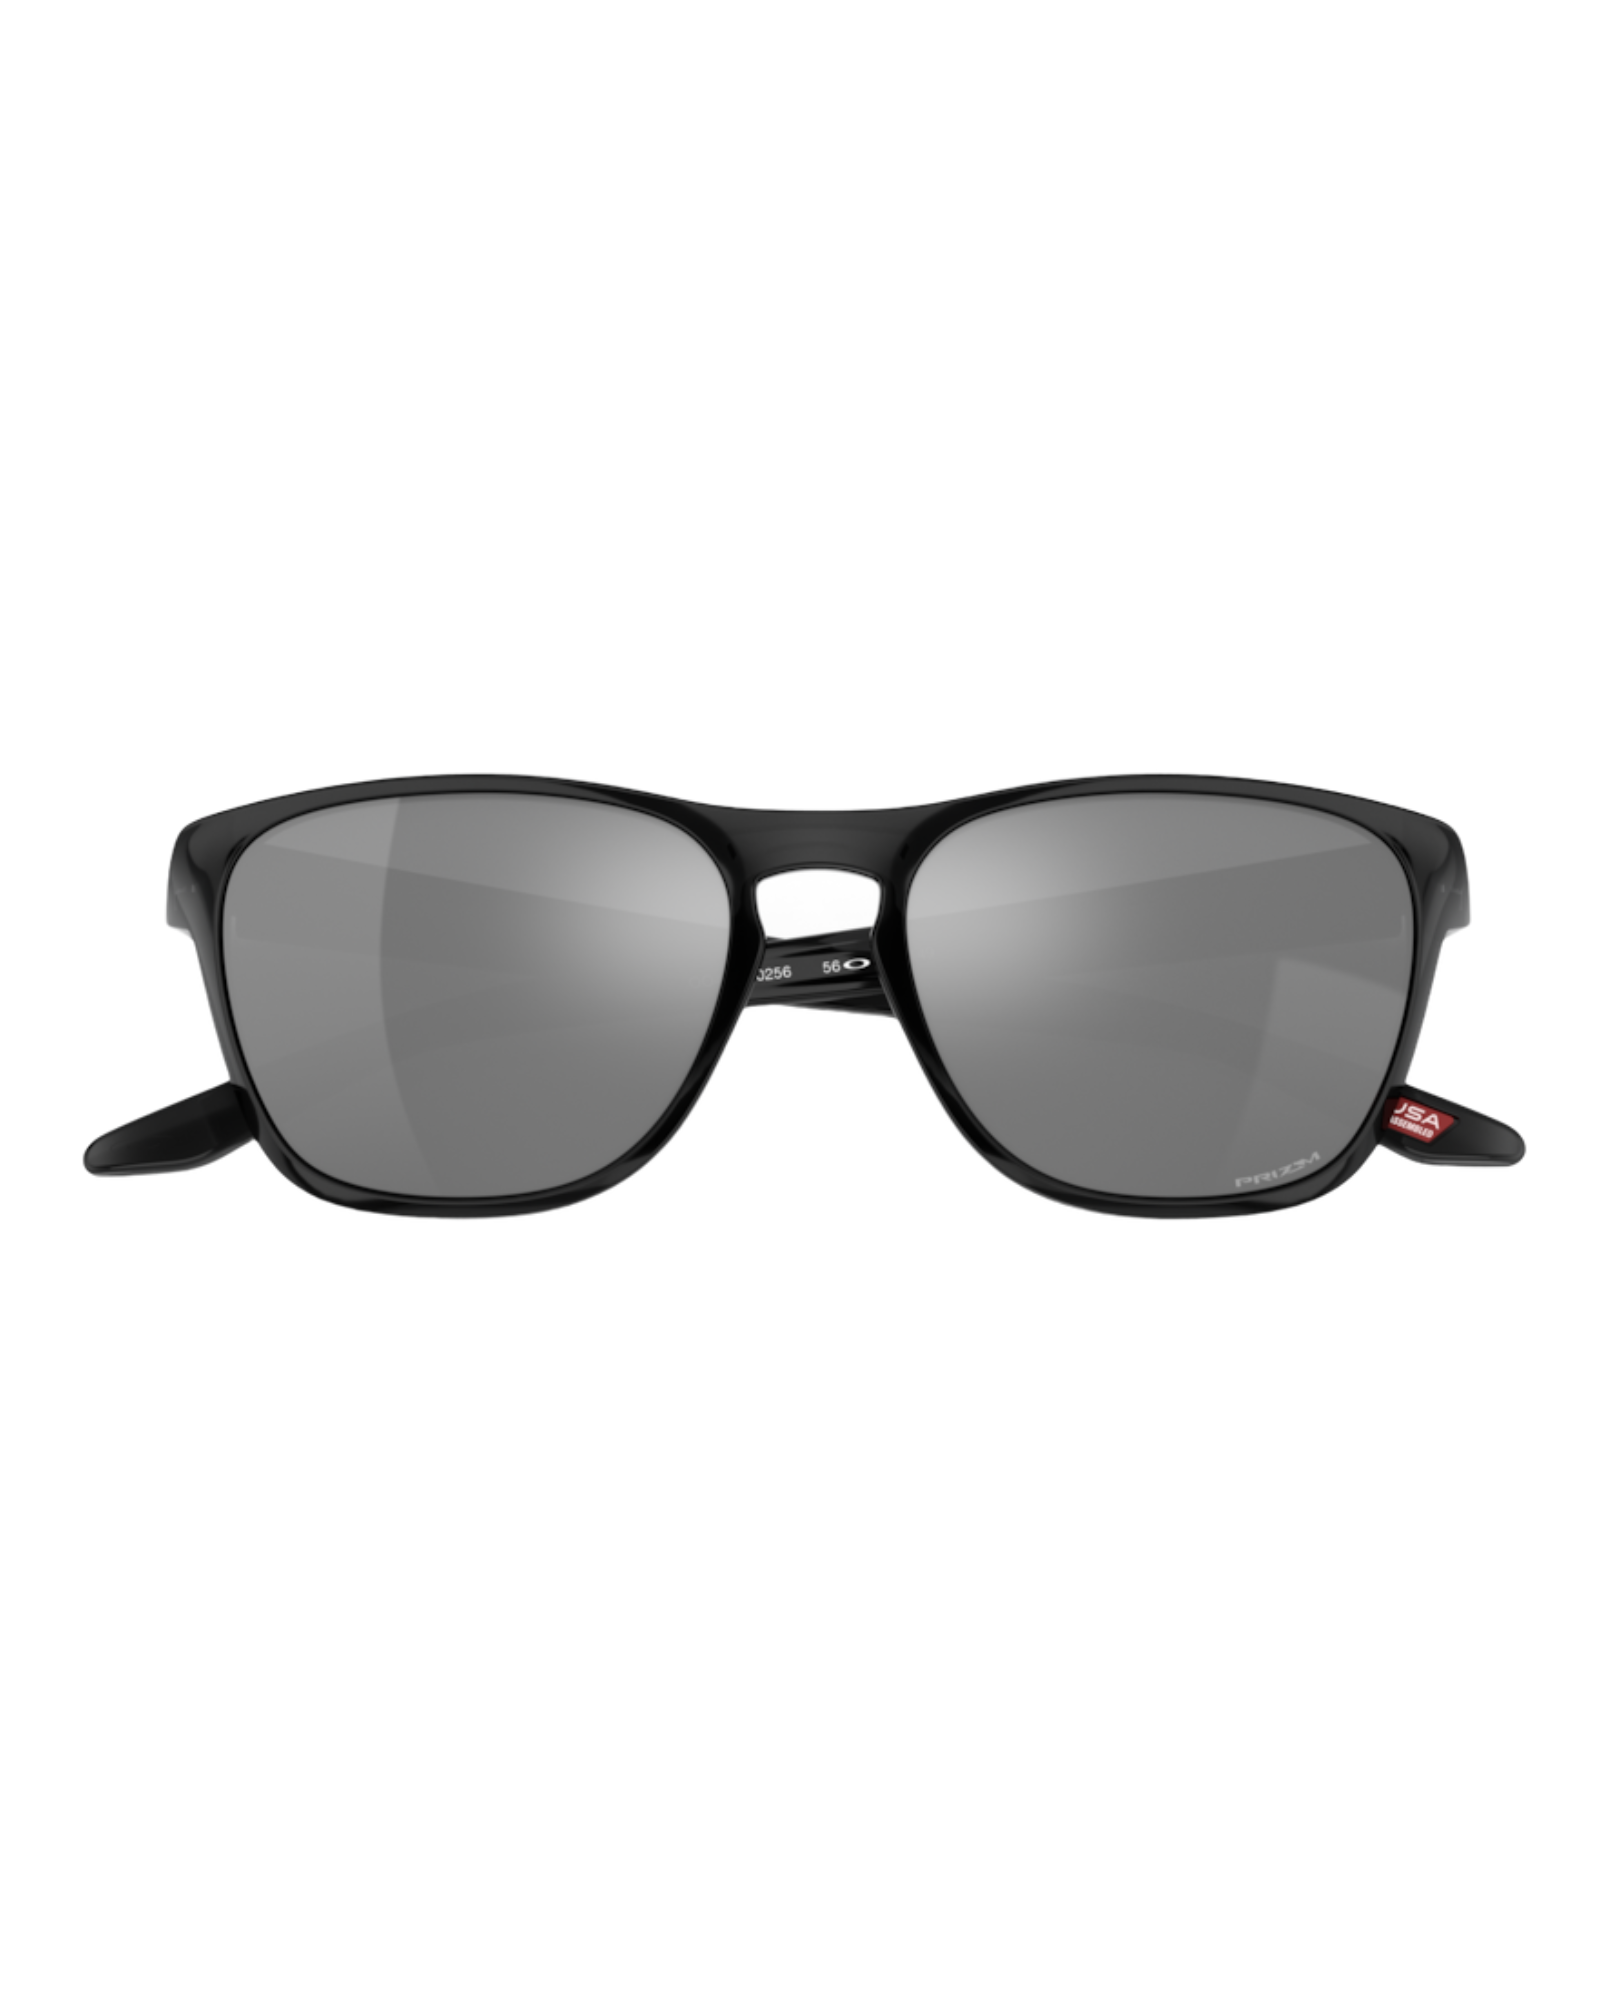 Oakley “Manorburn” Black Ink Sunglasses w/ Prizm Black Lenses.